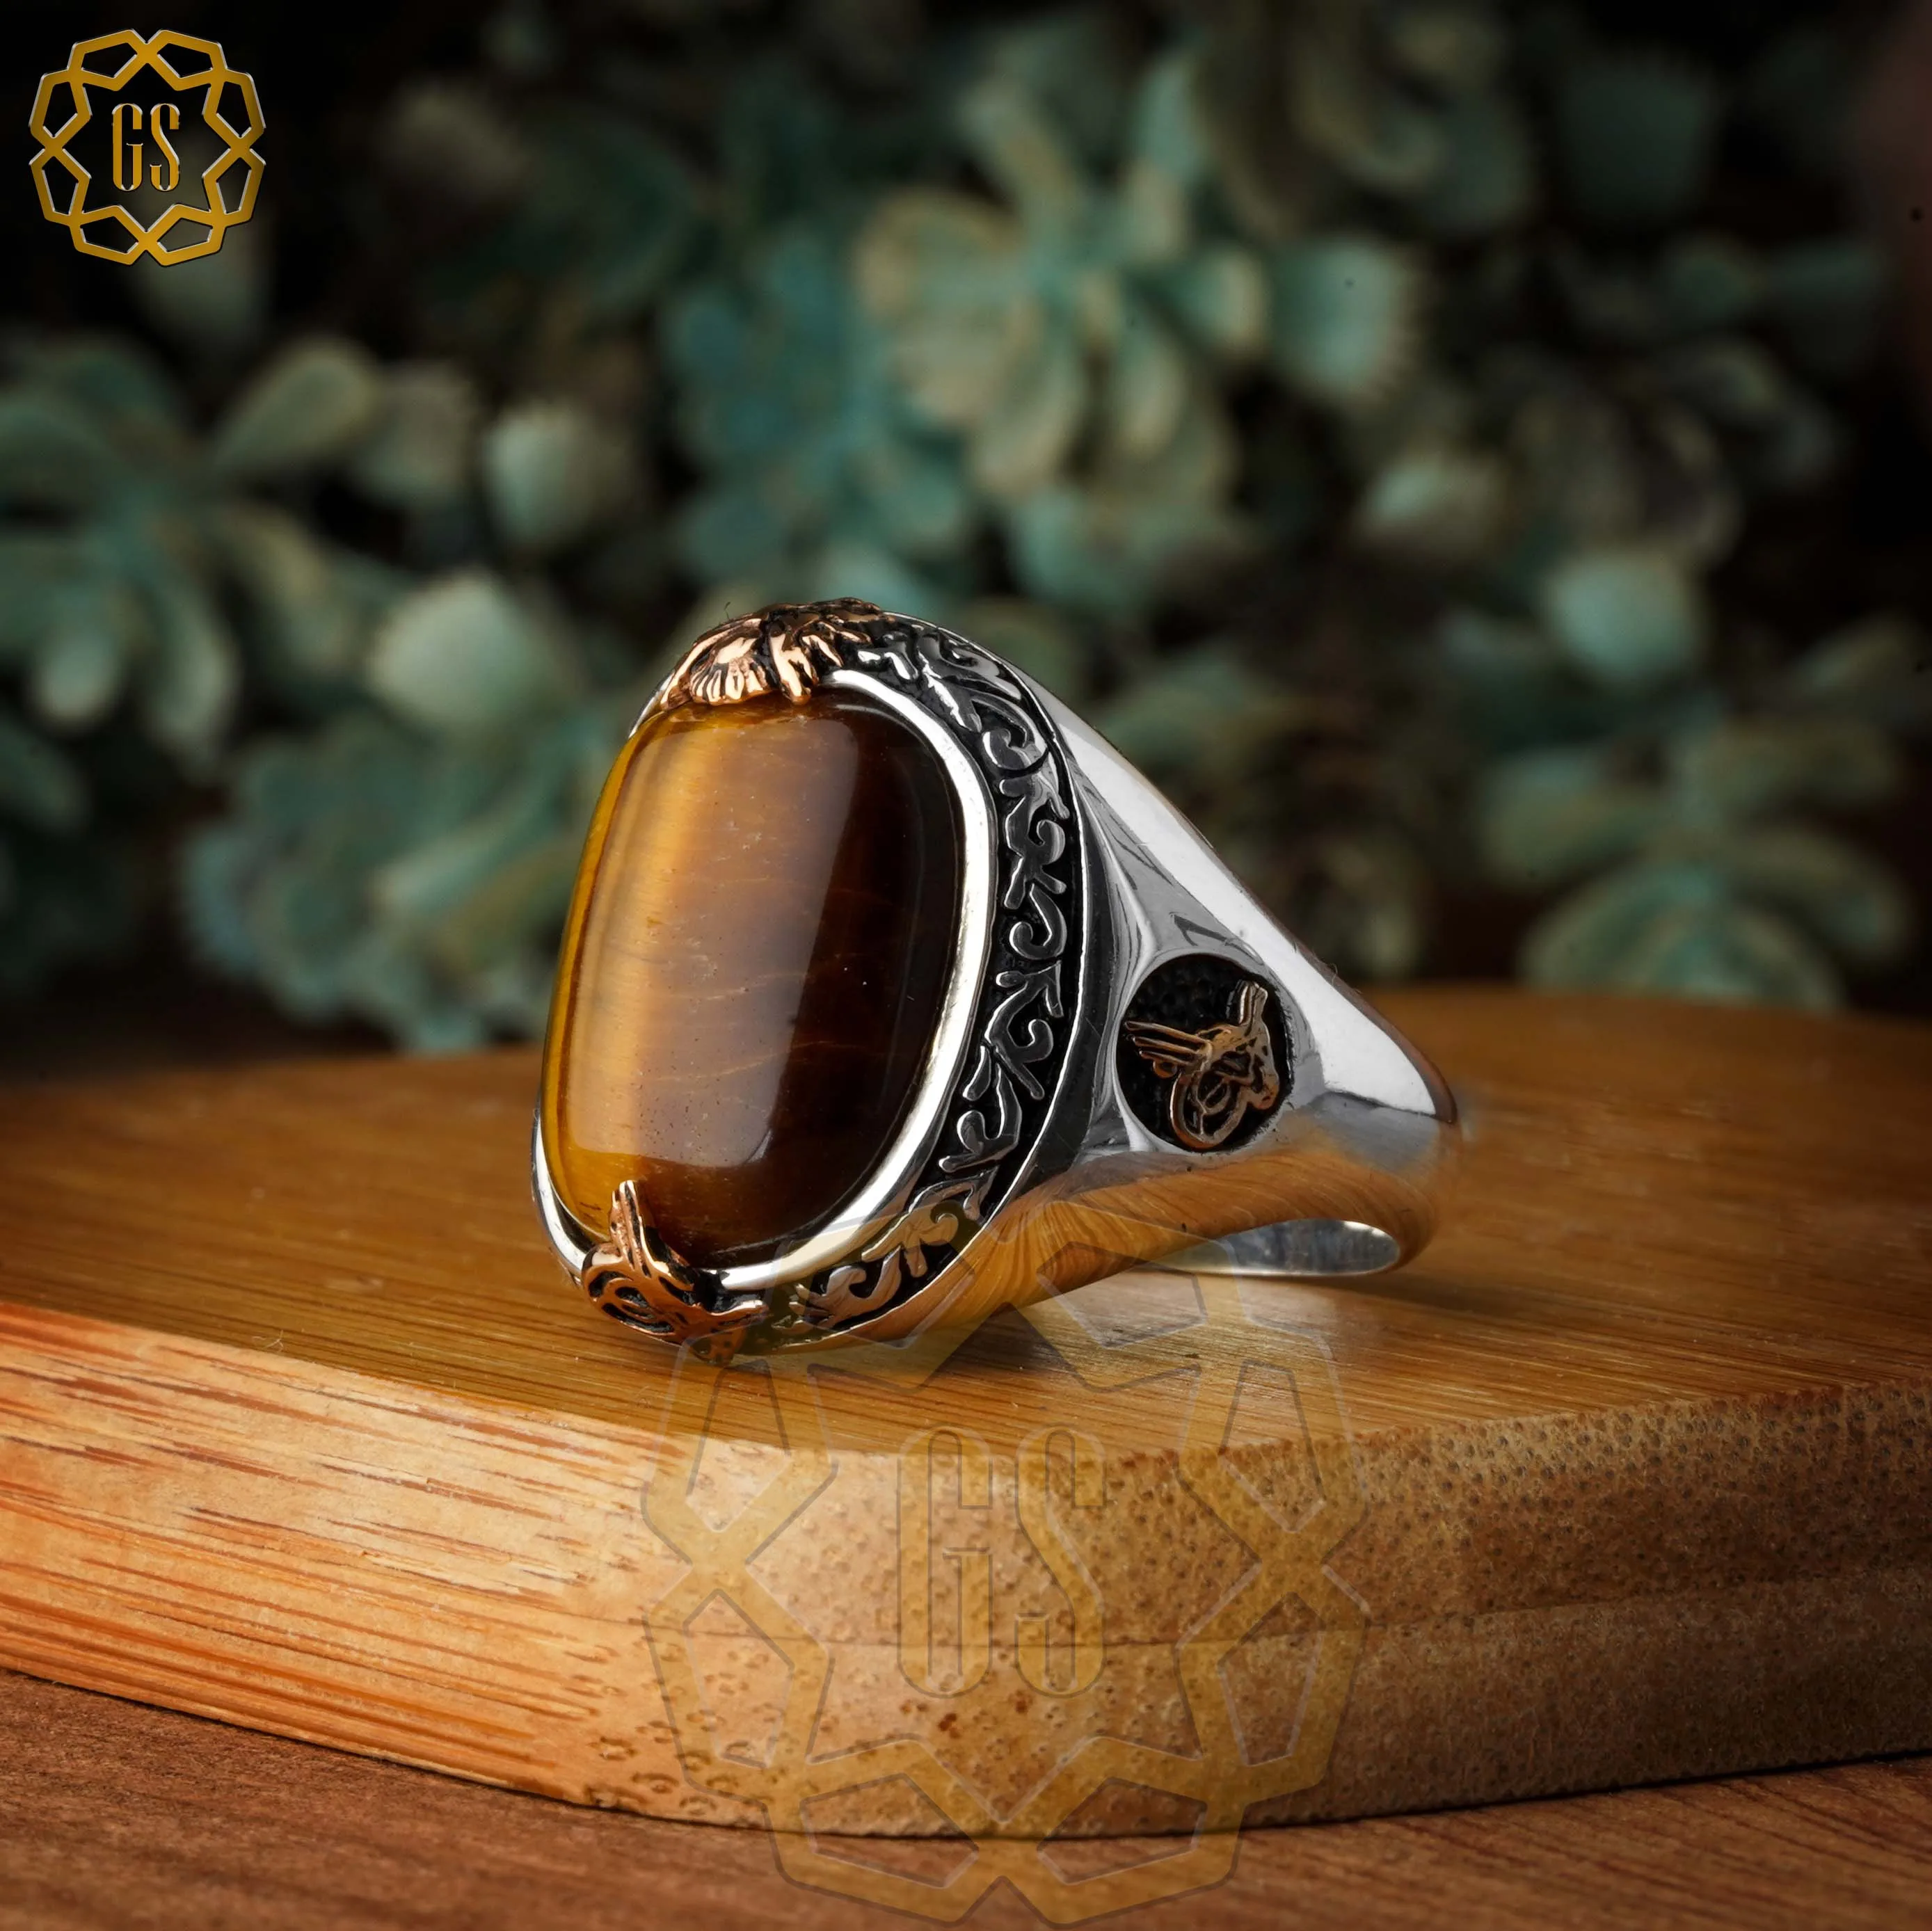 

Серебряное кольцо для мужчин 925 Сделано в Турции с камнем (Агат, оникс, тигровый глаз) .. Гарантированное высокое качество